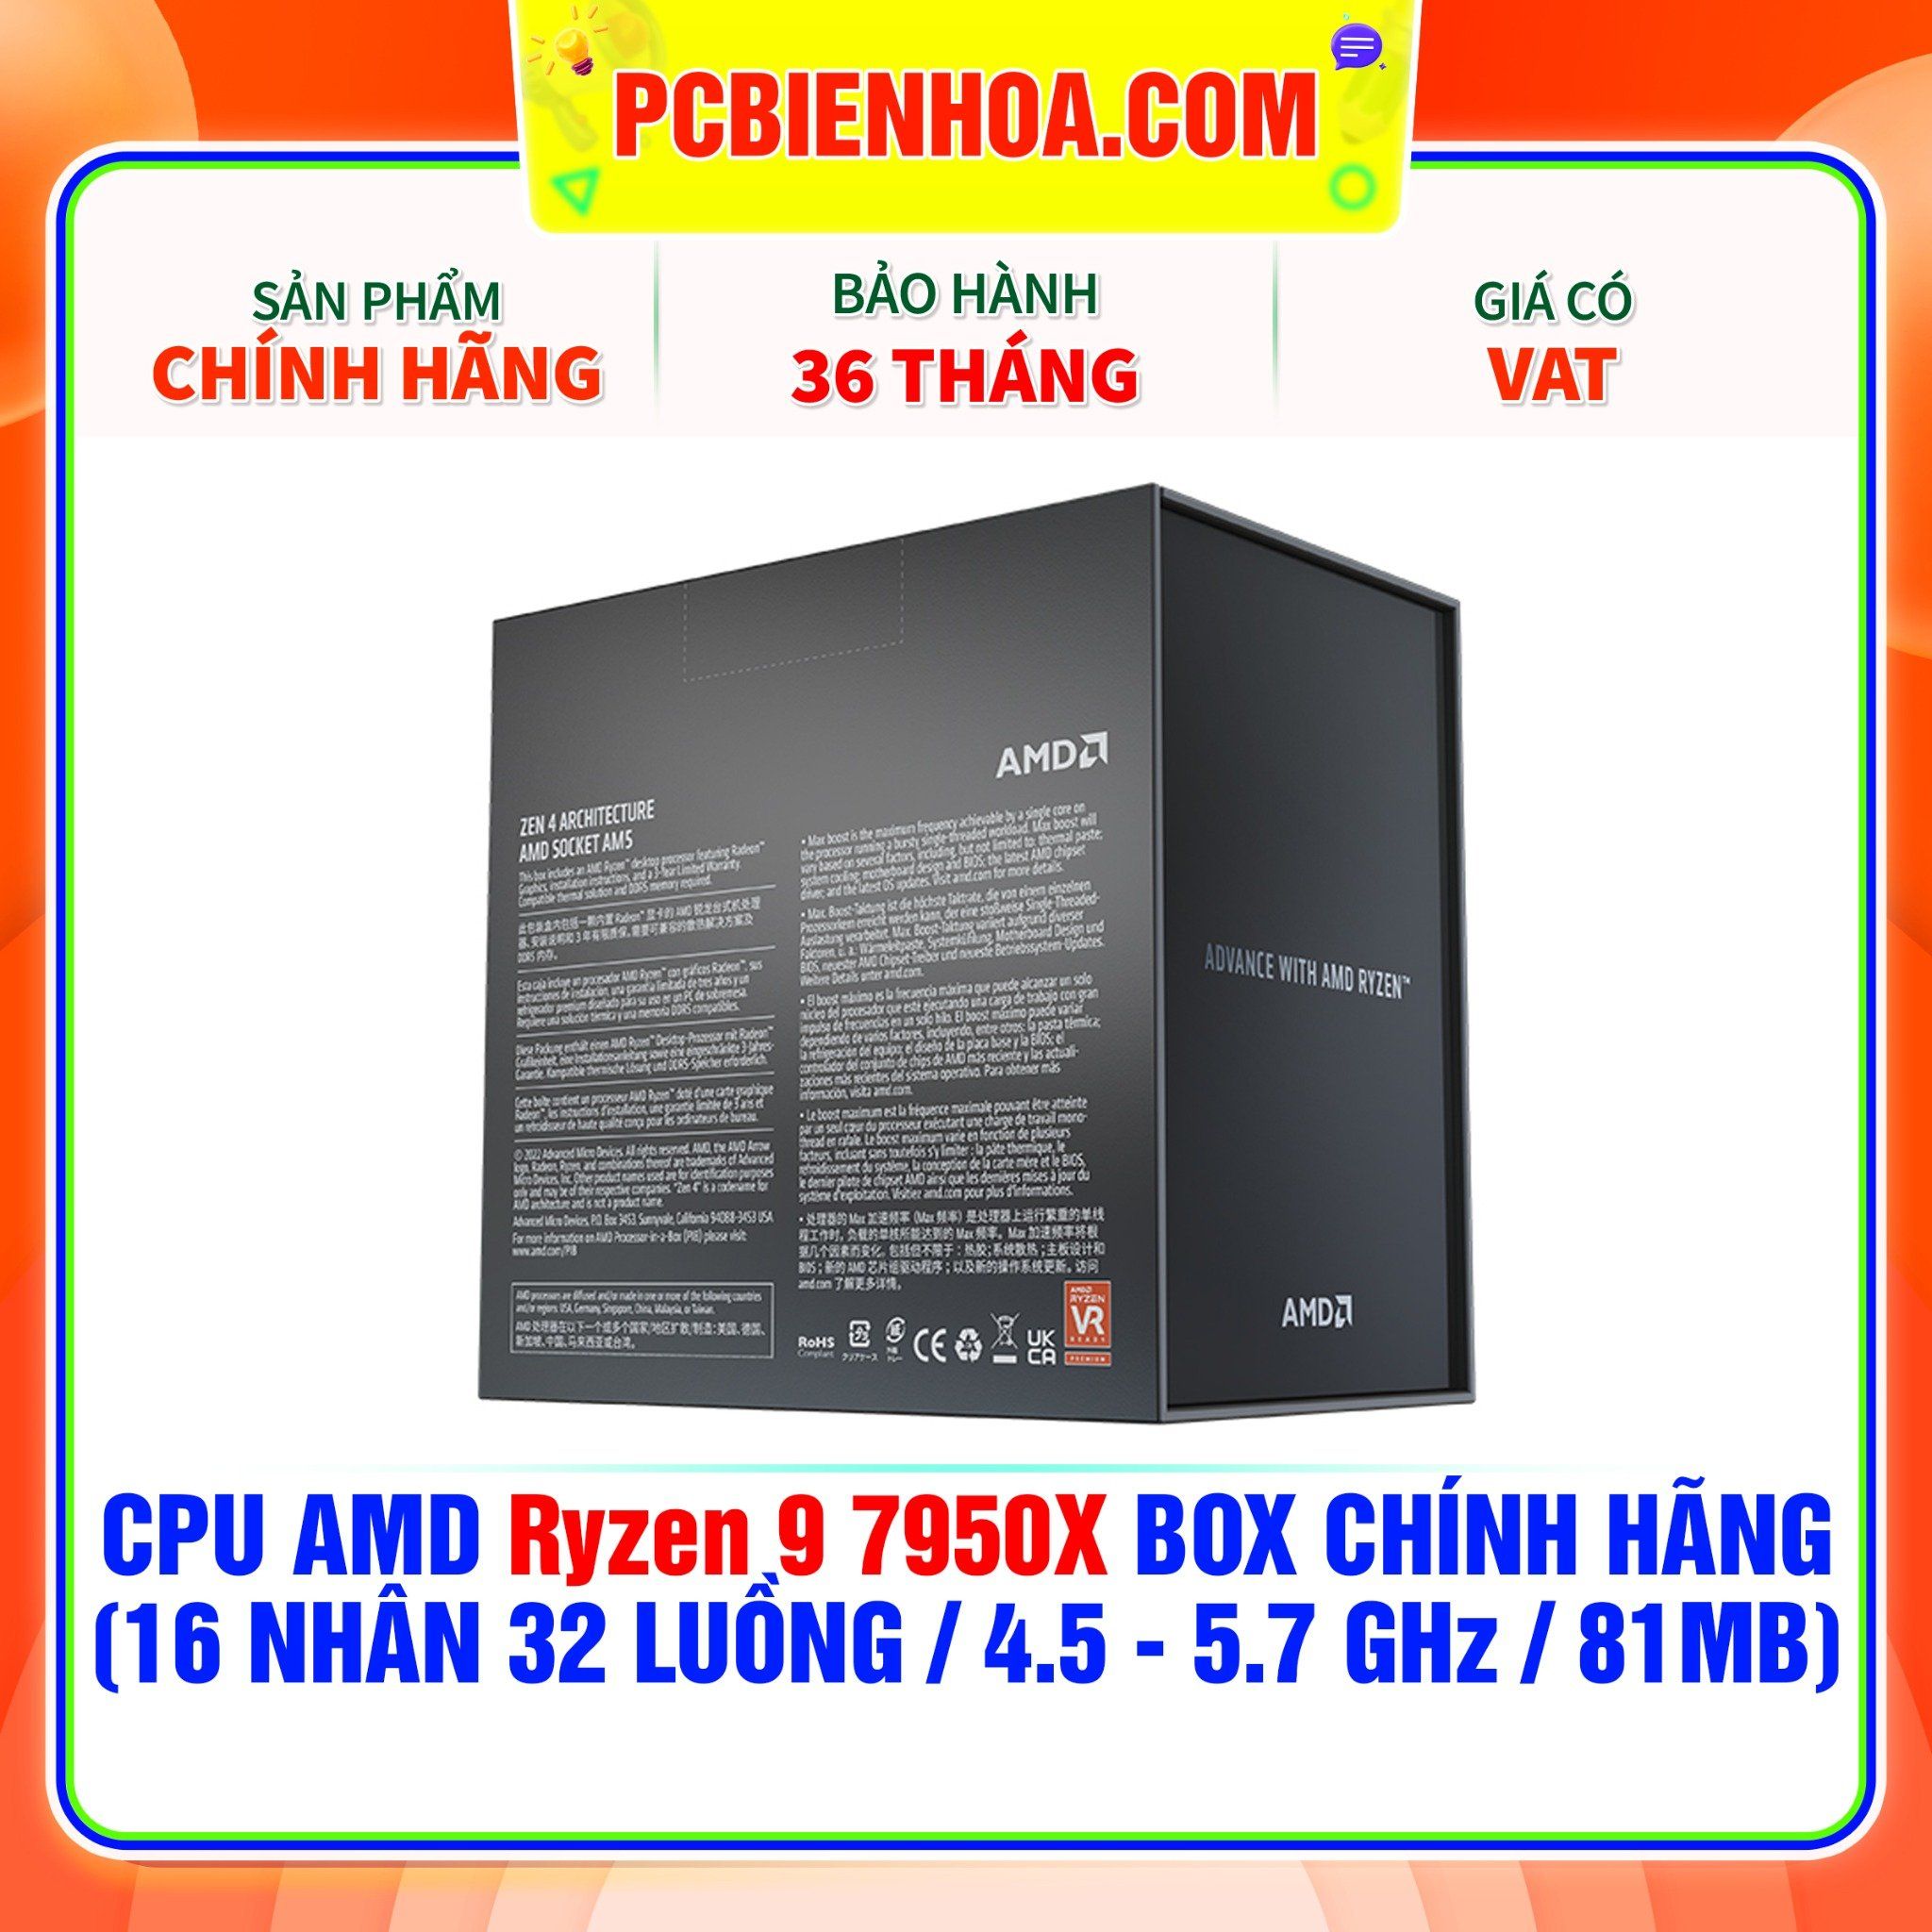  CPU AMD Ryzen 9 7950X BOX CHÍNH HÃNG ( 16 NHÂN 32 LUỒNG / 4.5 - 5.7 GHz / 81MB ) 